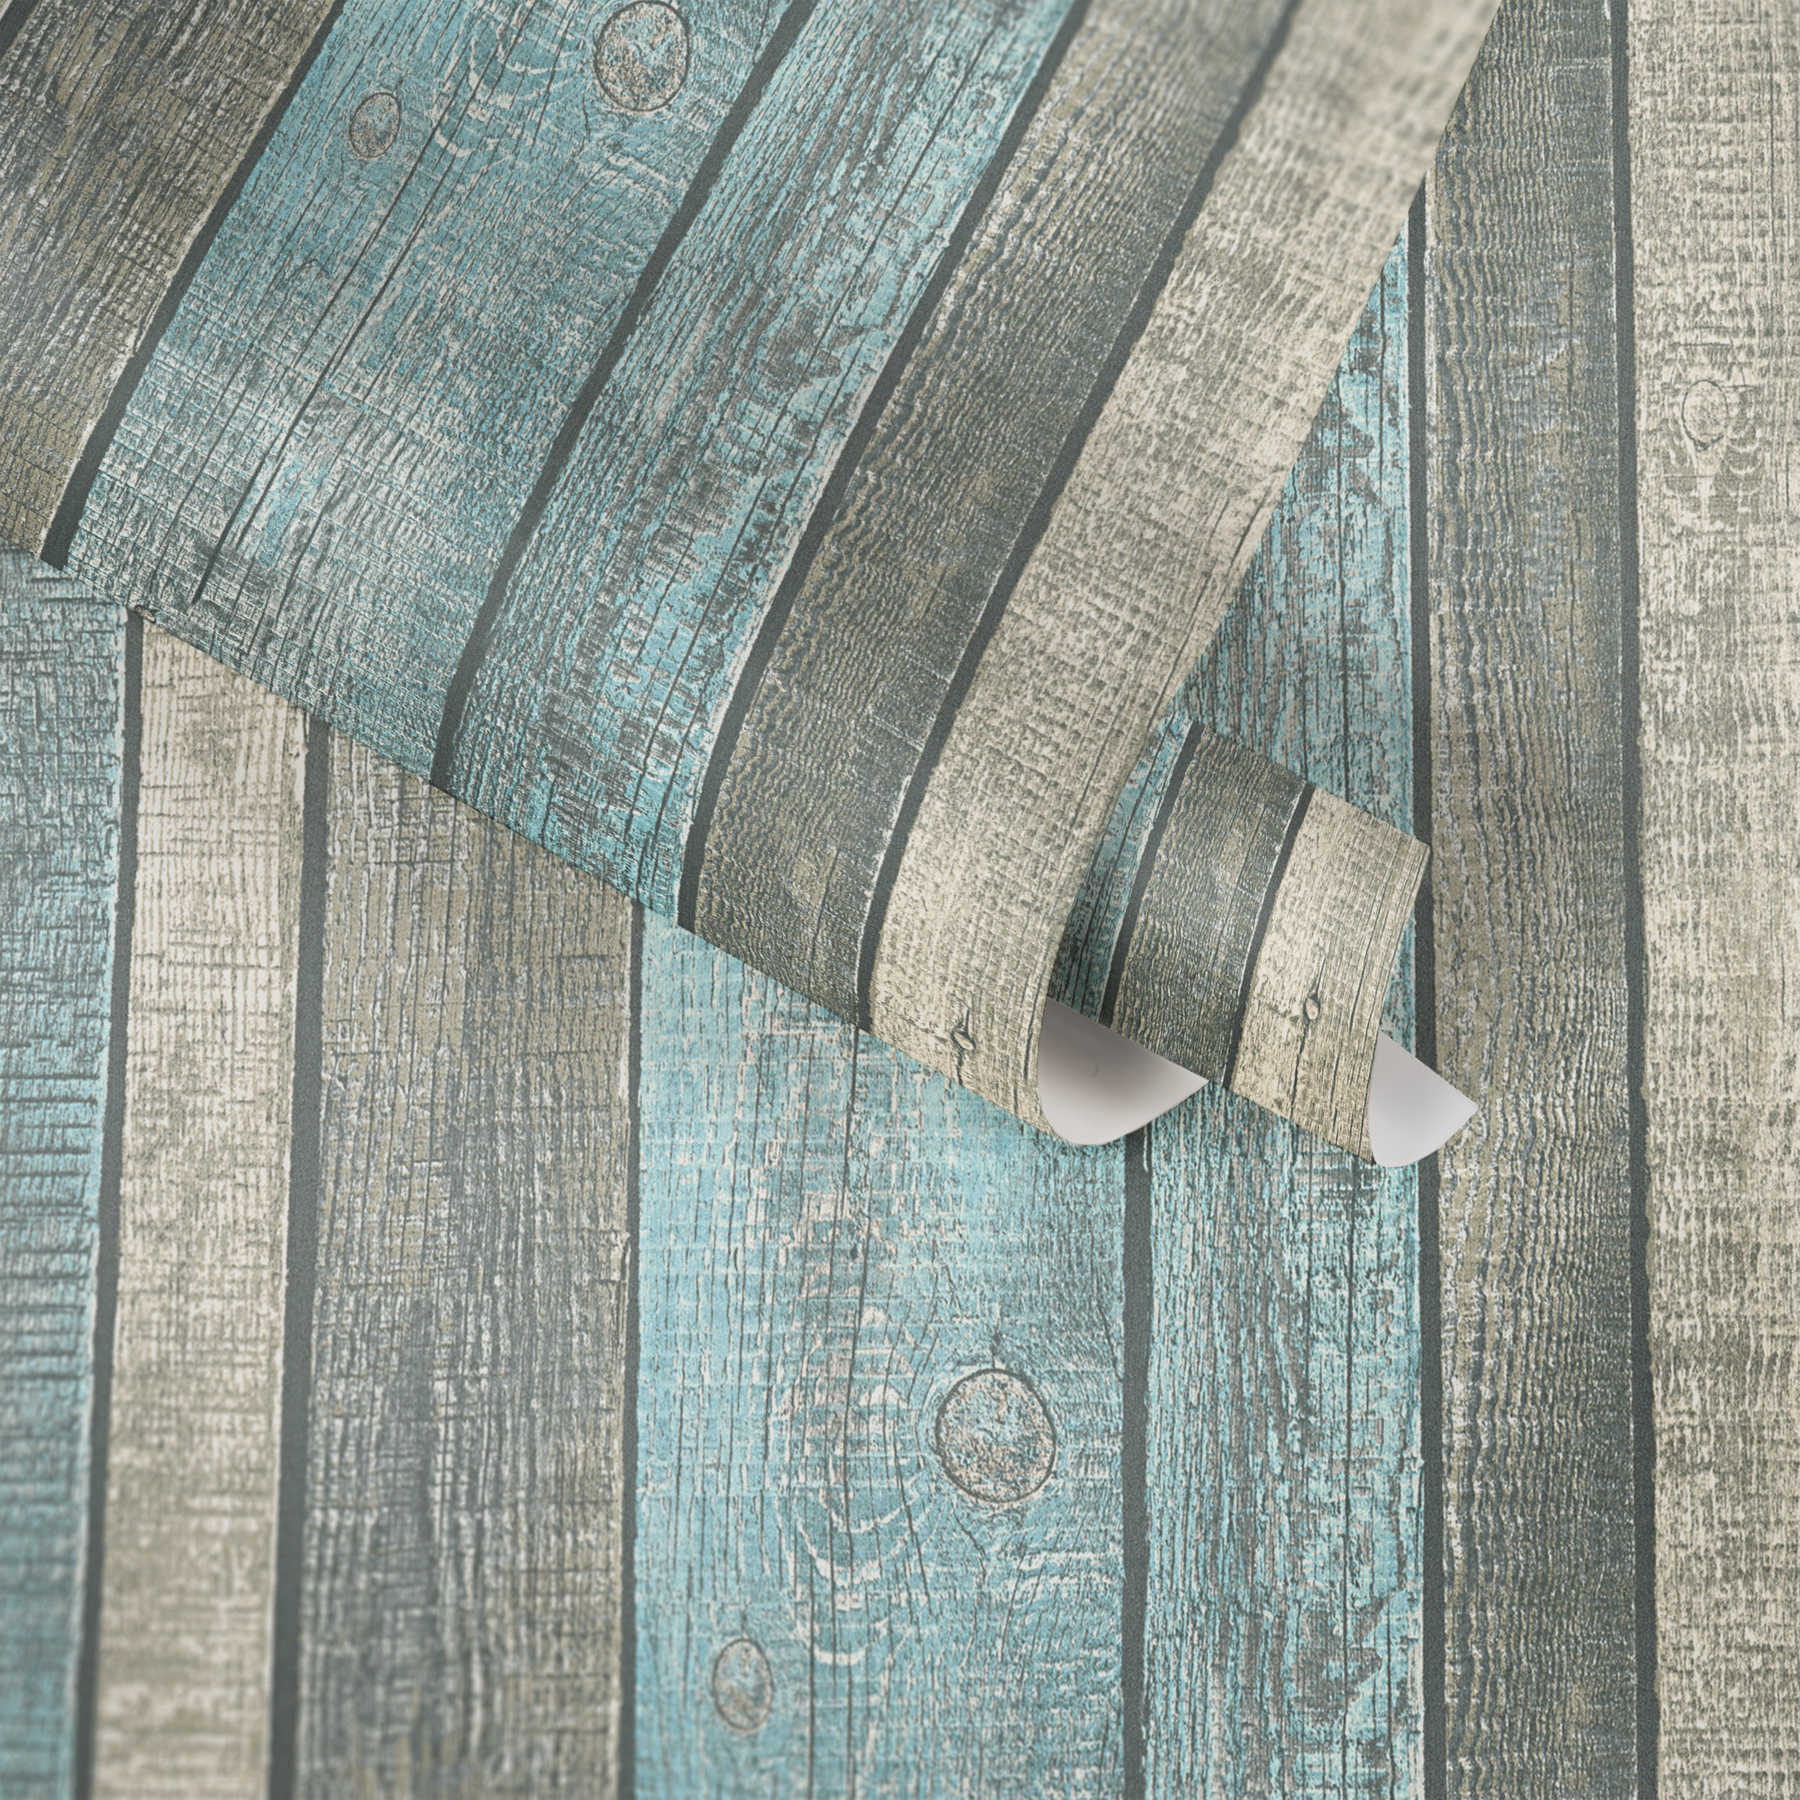             Carta da parati effetto legno con tavole e venature rustiche - blu, grigio, crema
        